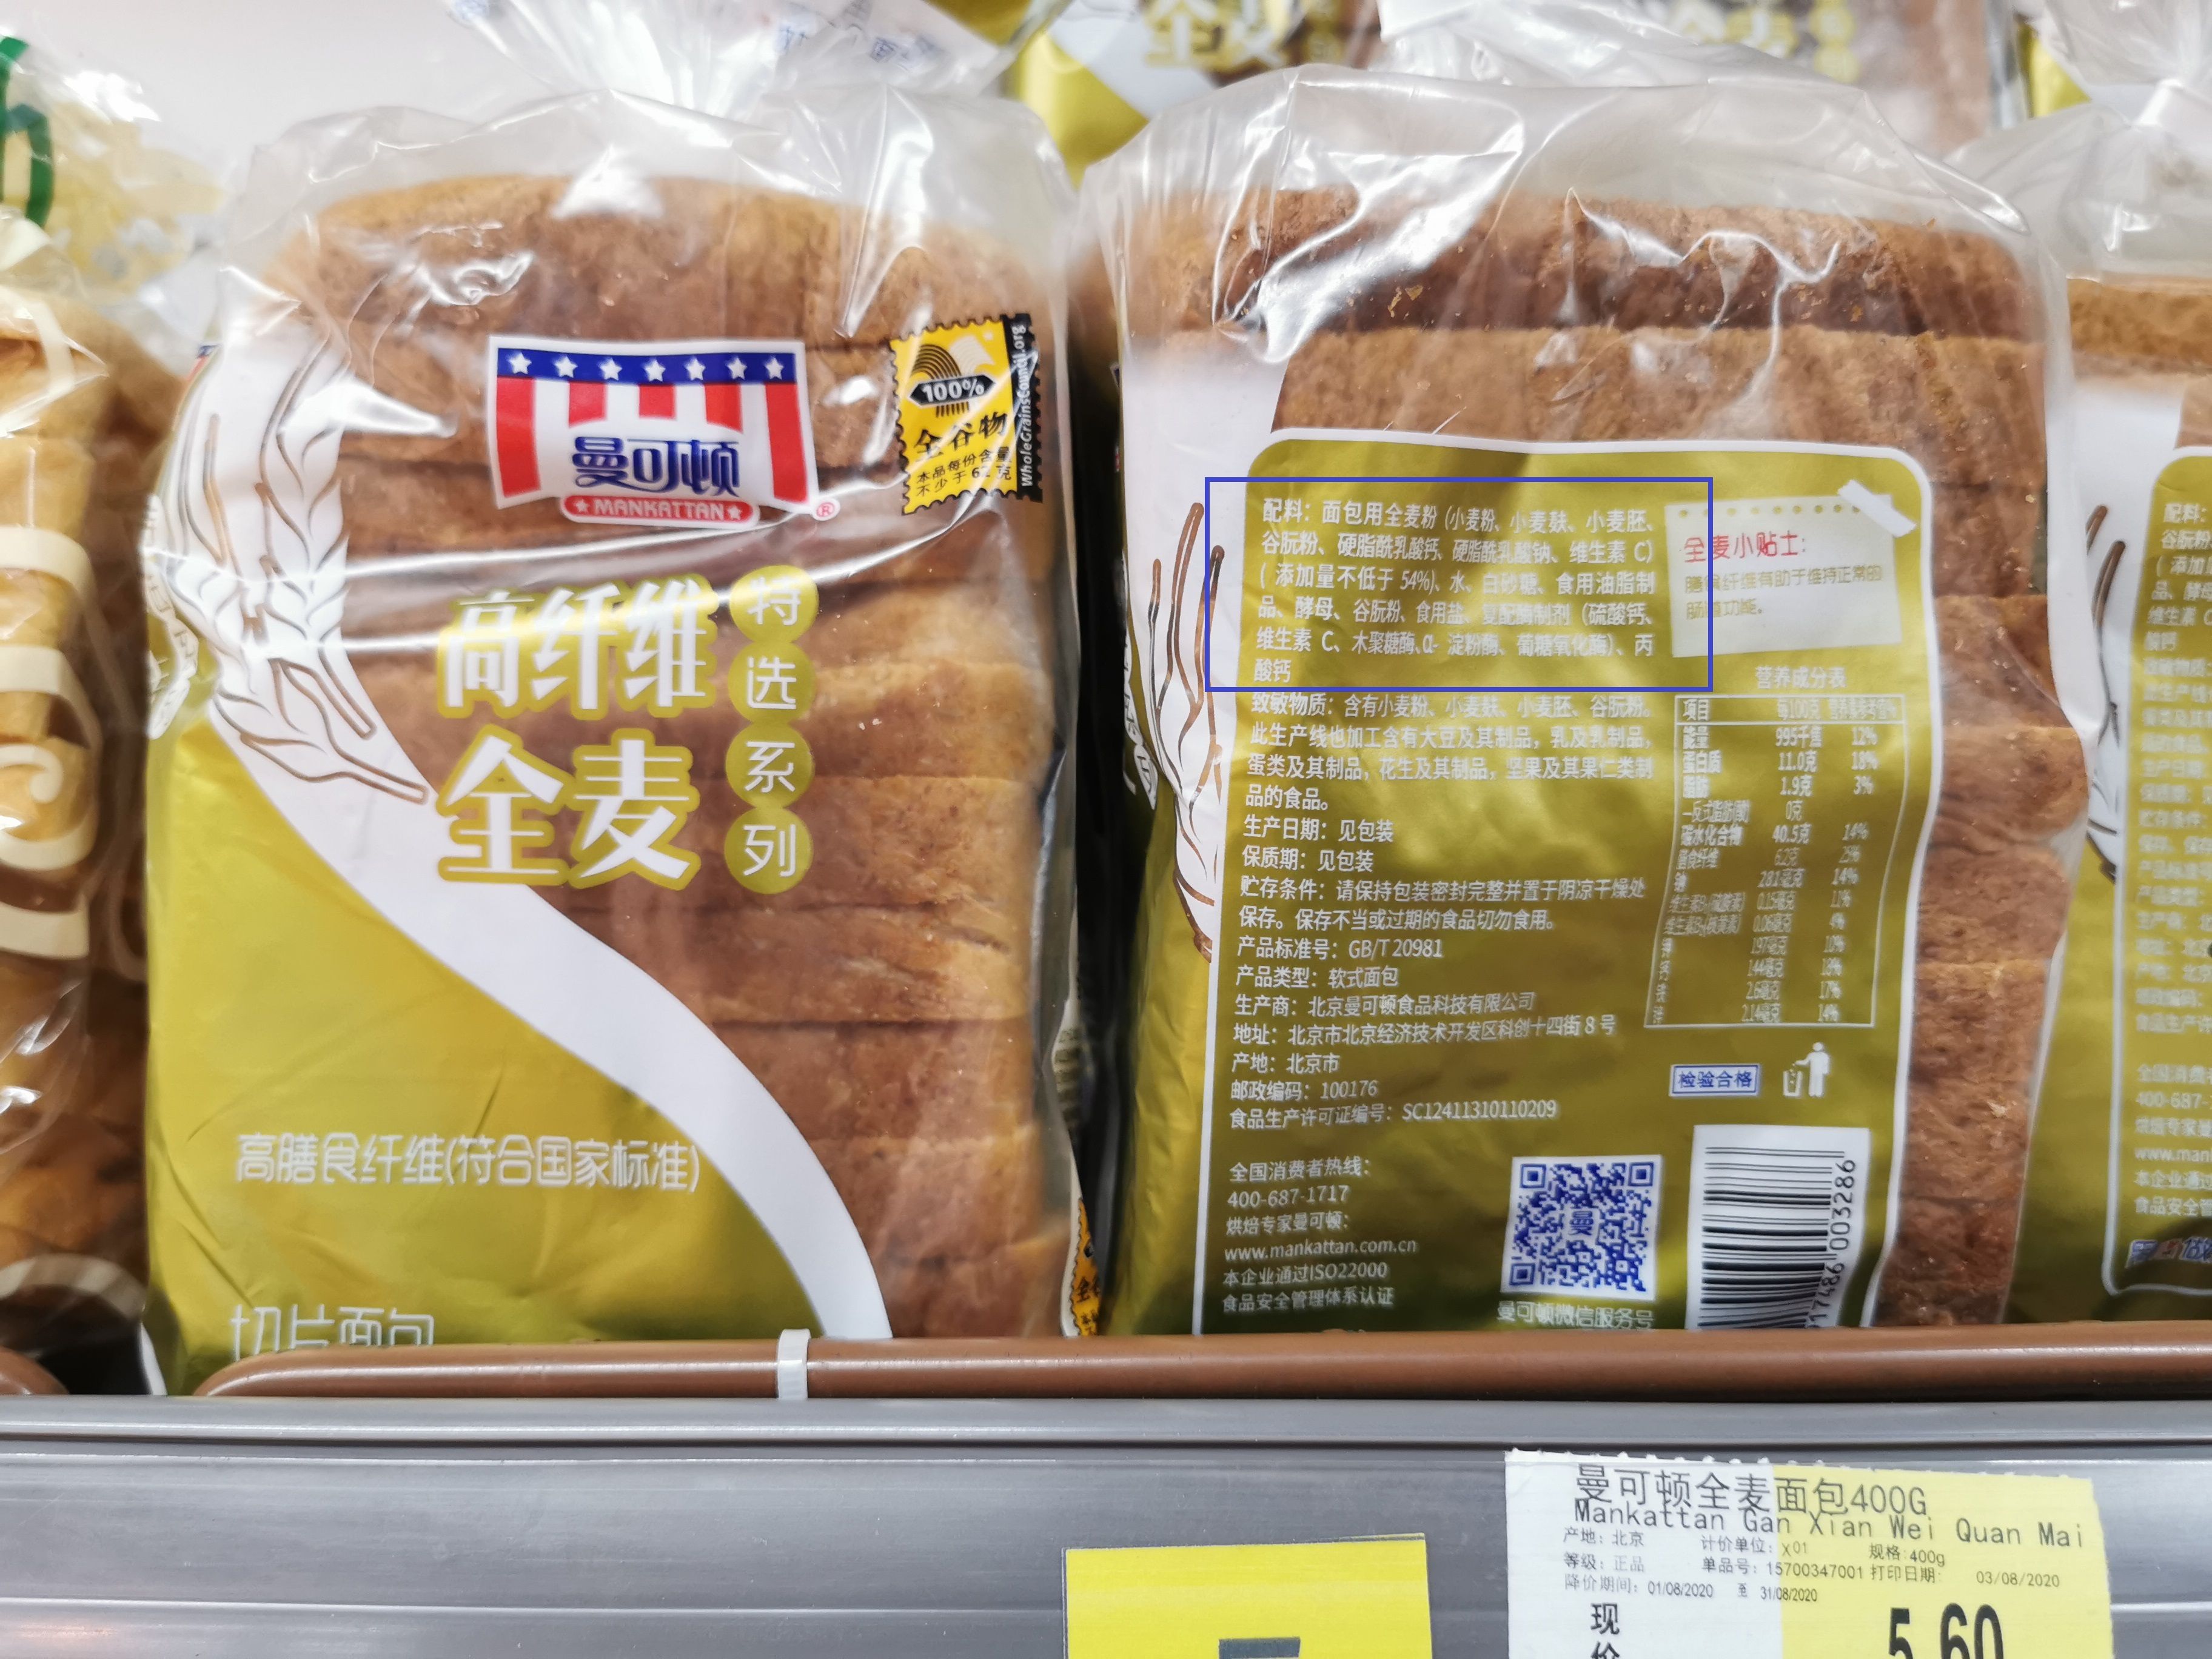 全麦面包真假难辨掺杂小麦粉涉嫌成分虚标